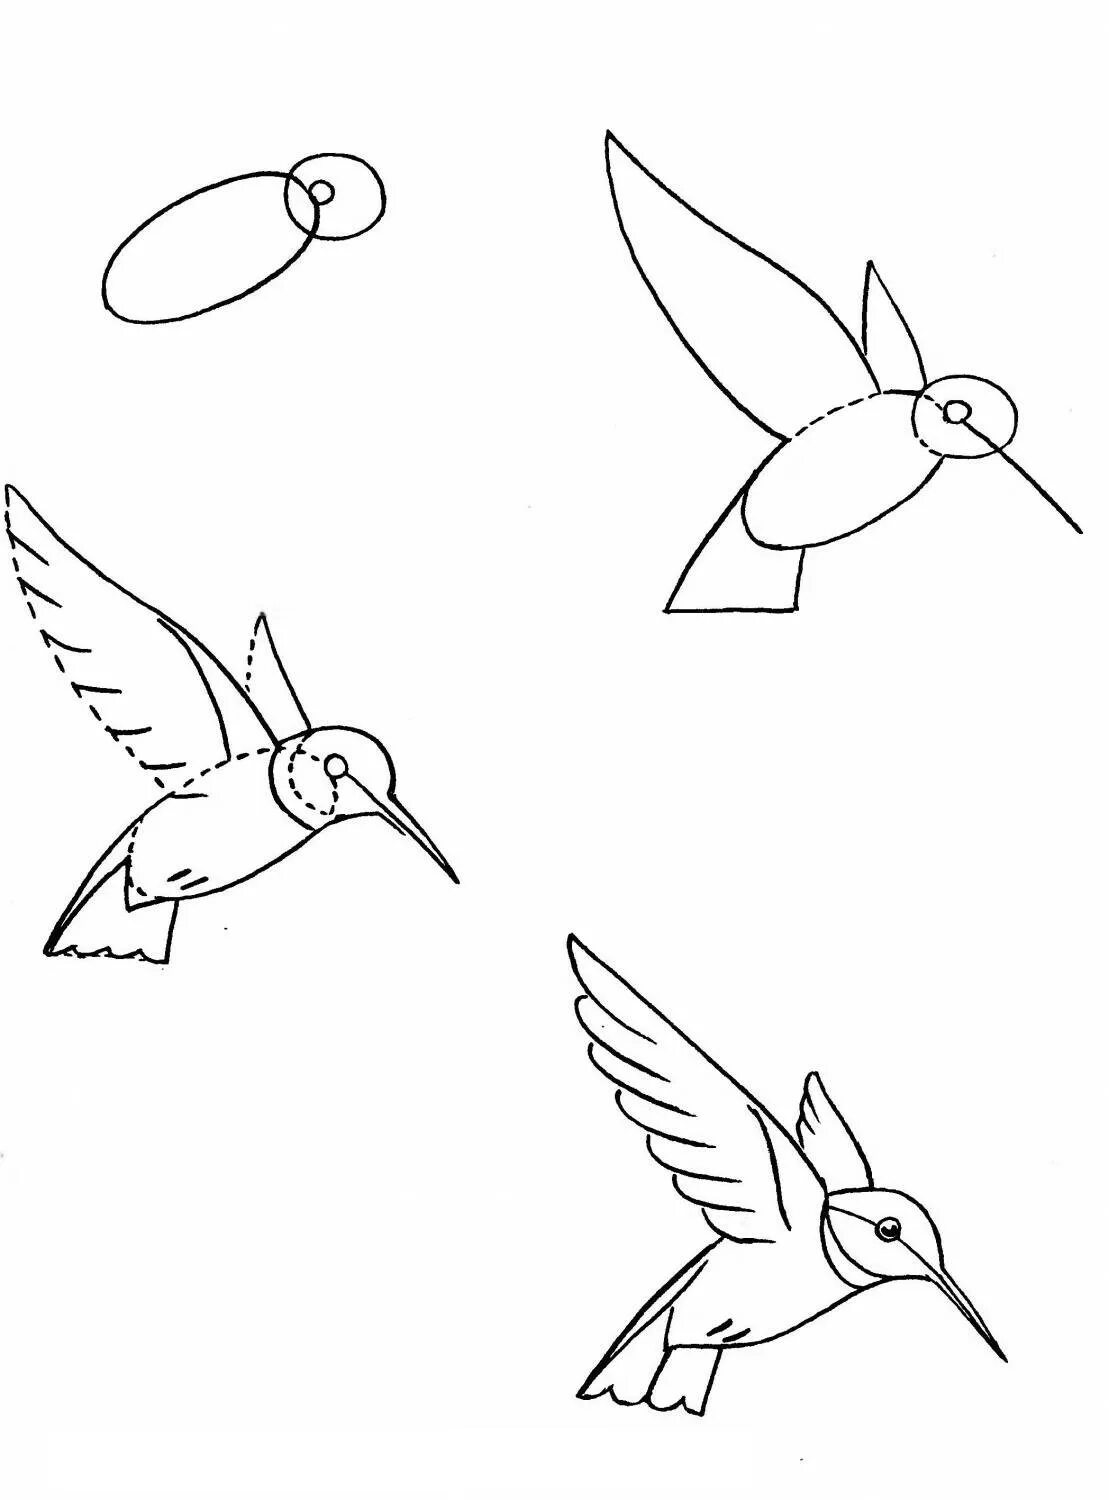 Птица рисунок пошагово. Рисунок птицы карандашом поэтапно. Рисунки птиц карандашом для начинающих. Птица рисунок карандашом для детей. Рисунок птиц карандашом легкие